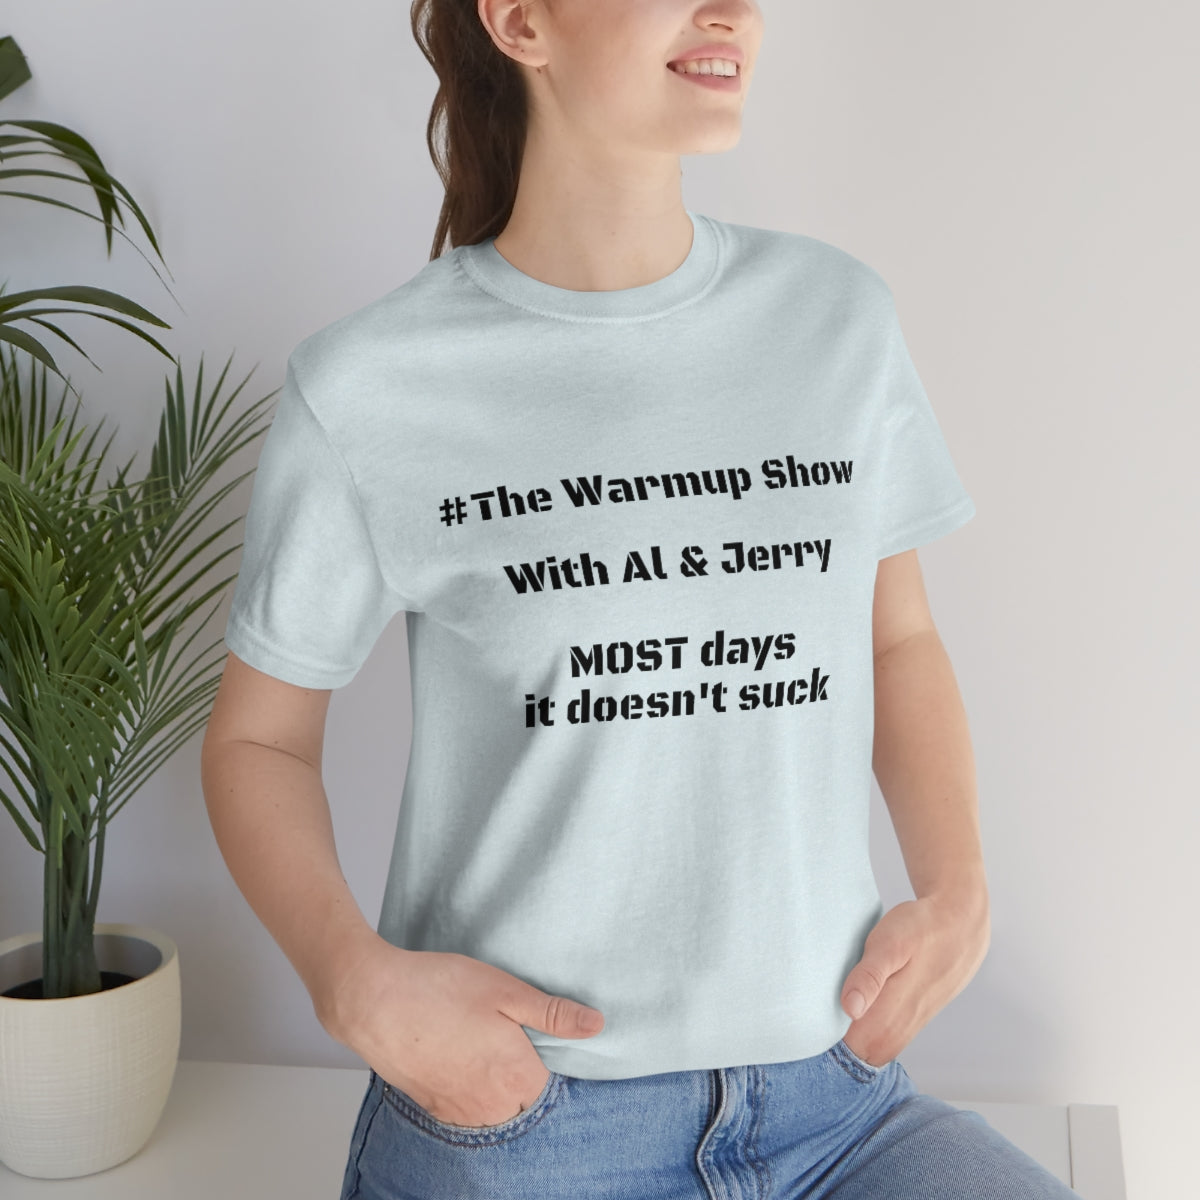 Al & Jerry "Warmup Show" Short Sleeve Tee